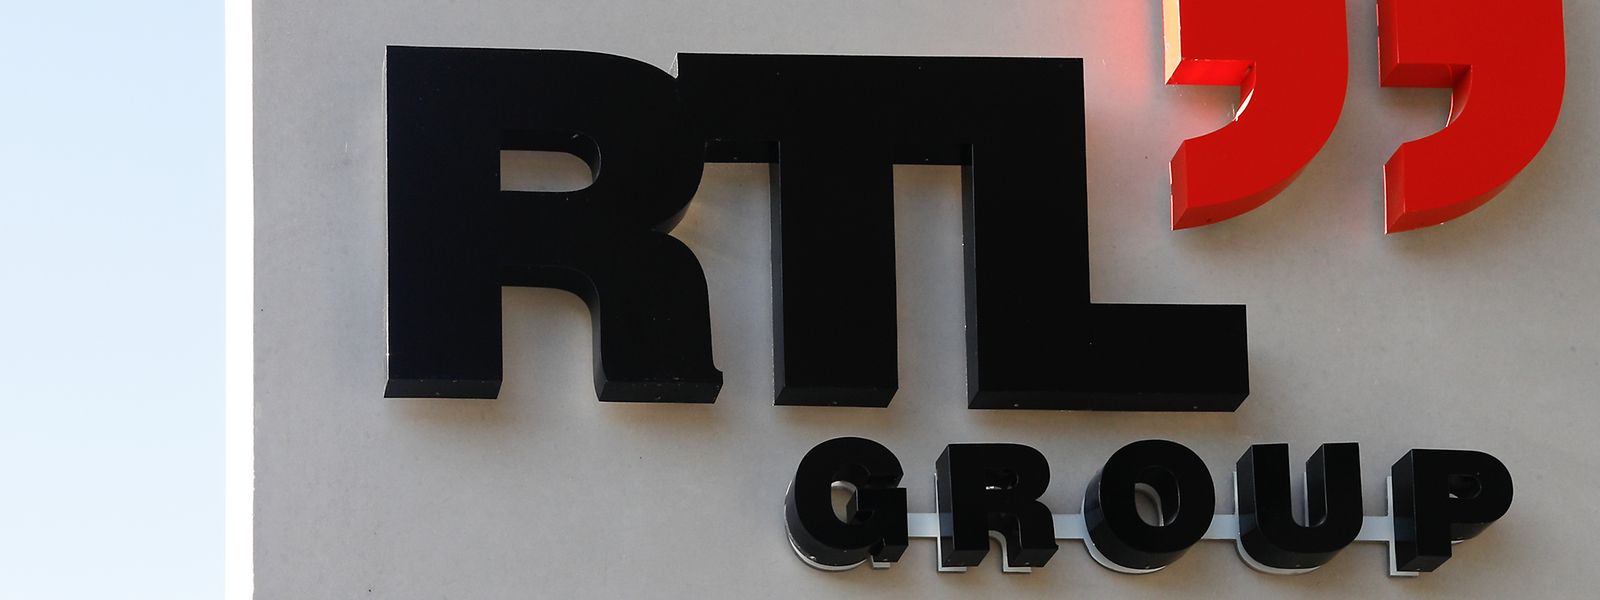 En échange de nouvelles dotations, RTL devrait devenir un incubateur culturel, remplir des missions d'éducation aux médias.